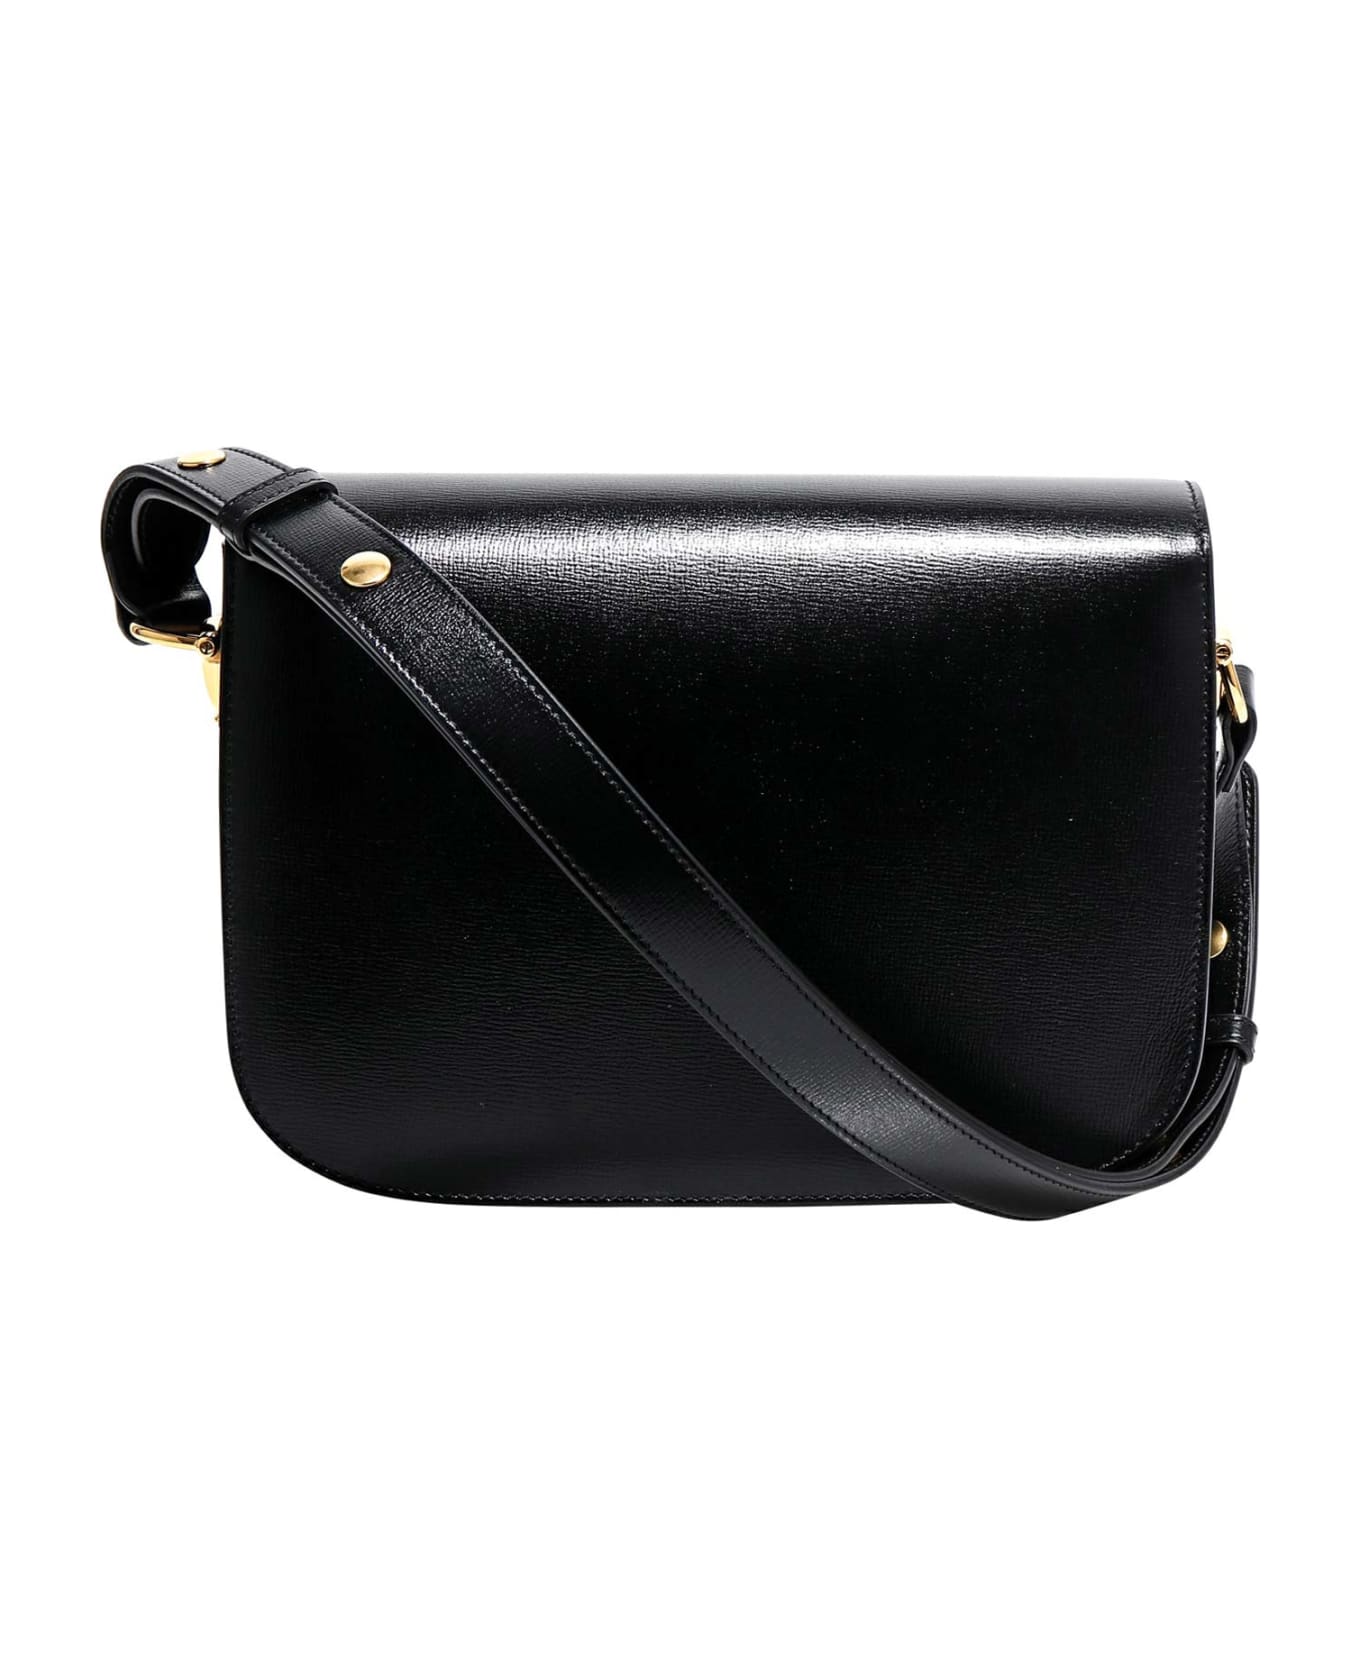 Gucci 1955 Horsebit Shoulder Bag - Black